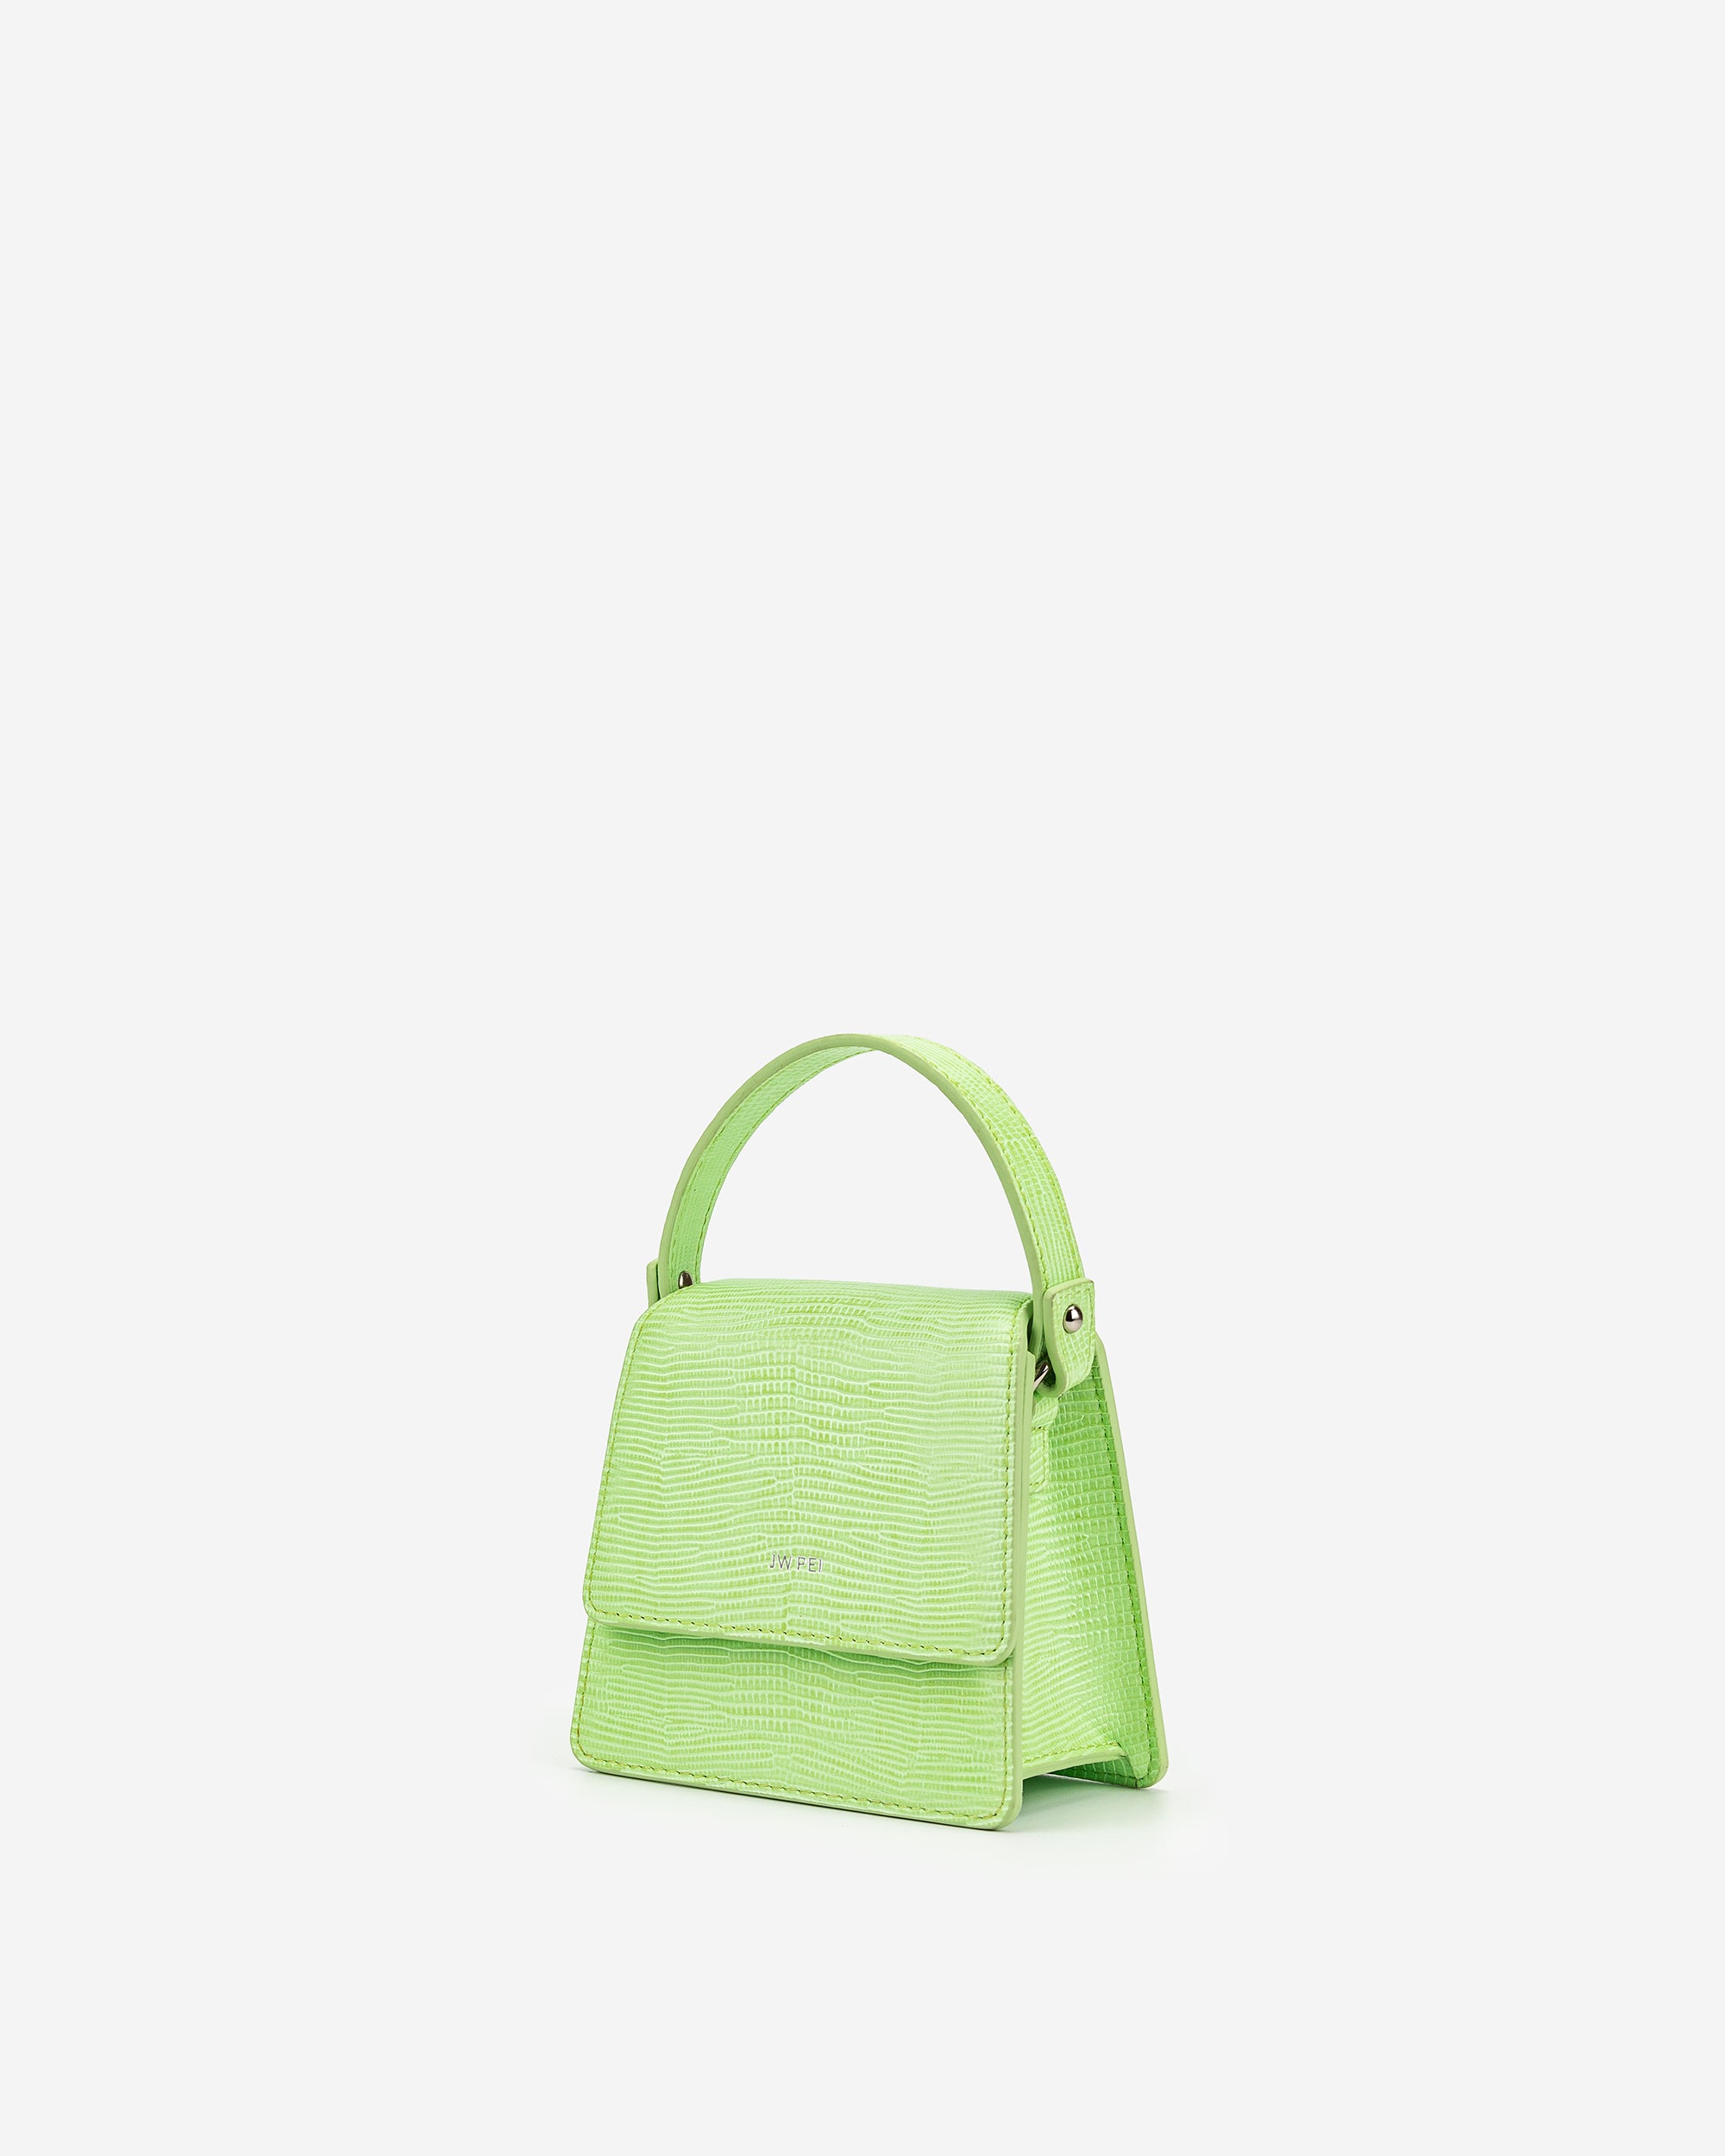 Fae 迷你手提包 - 檸檬綠色蜥蜴紋